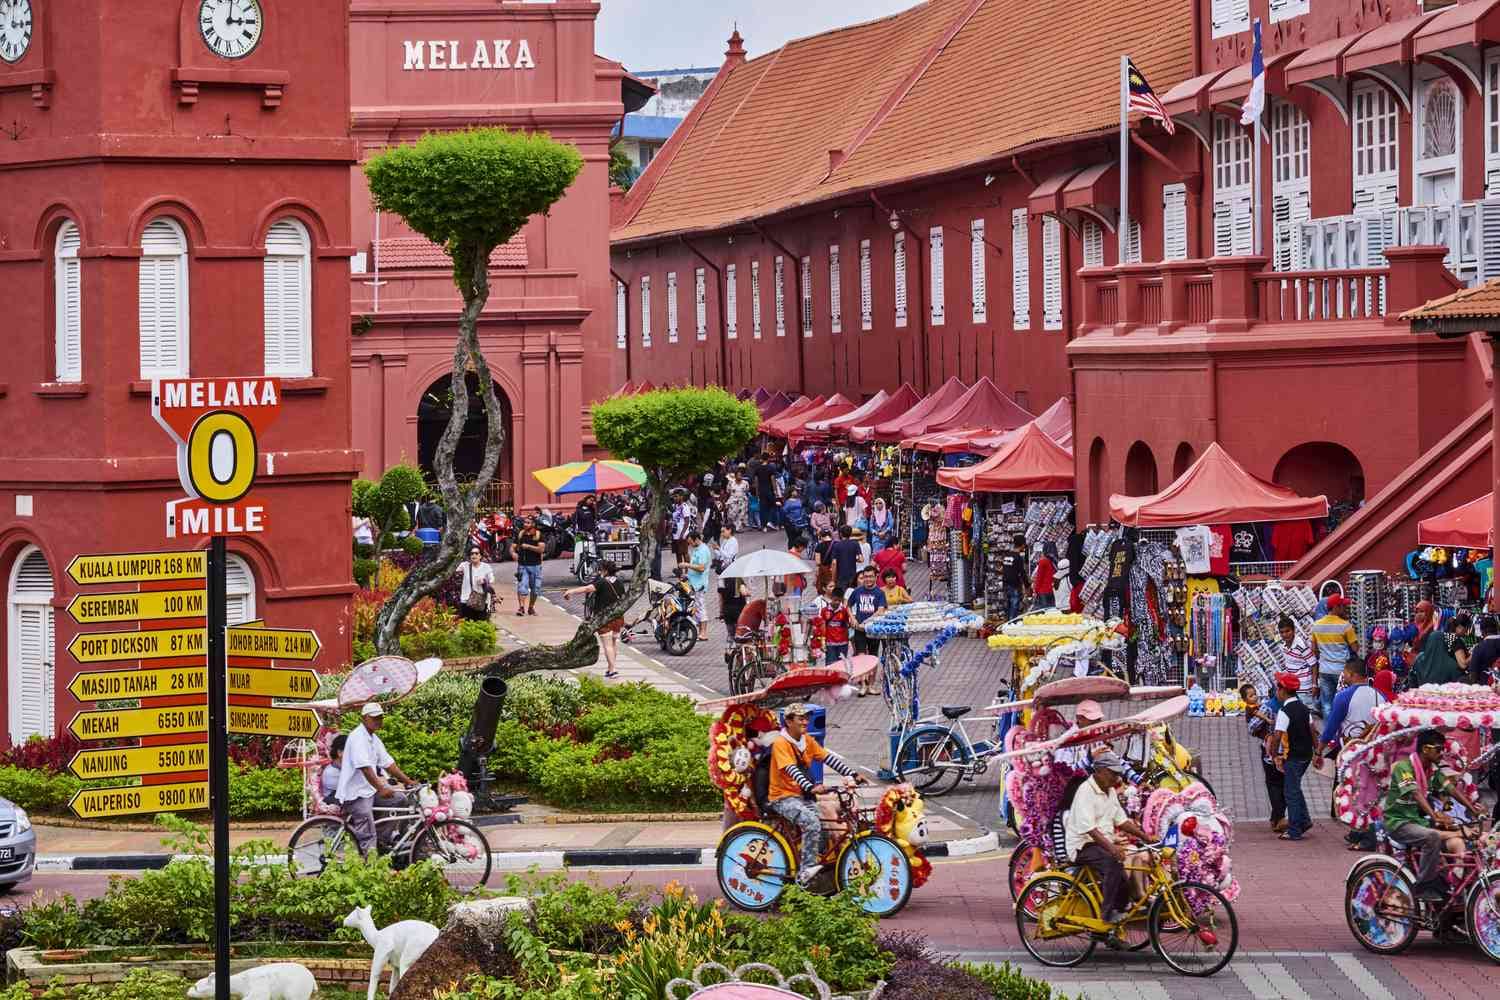 Melaka Historic City, Malacca